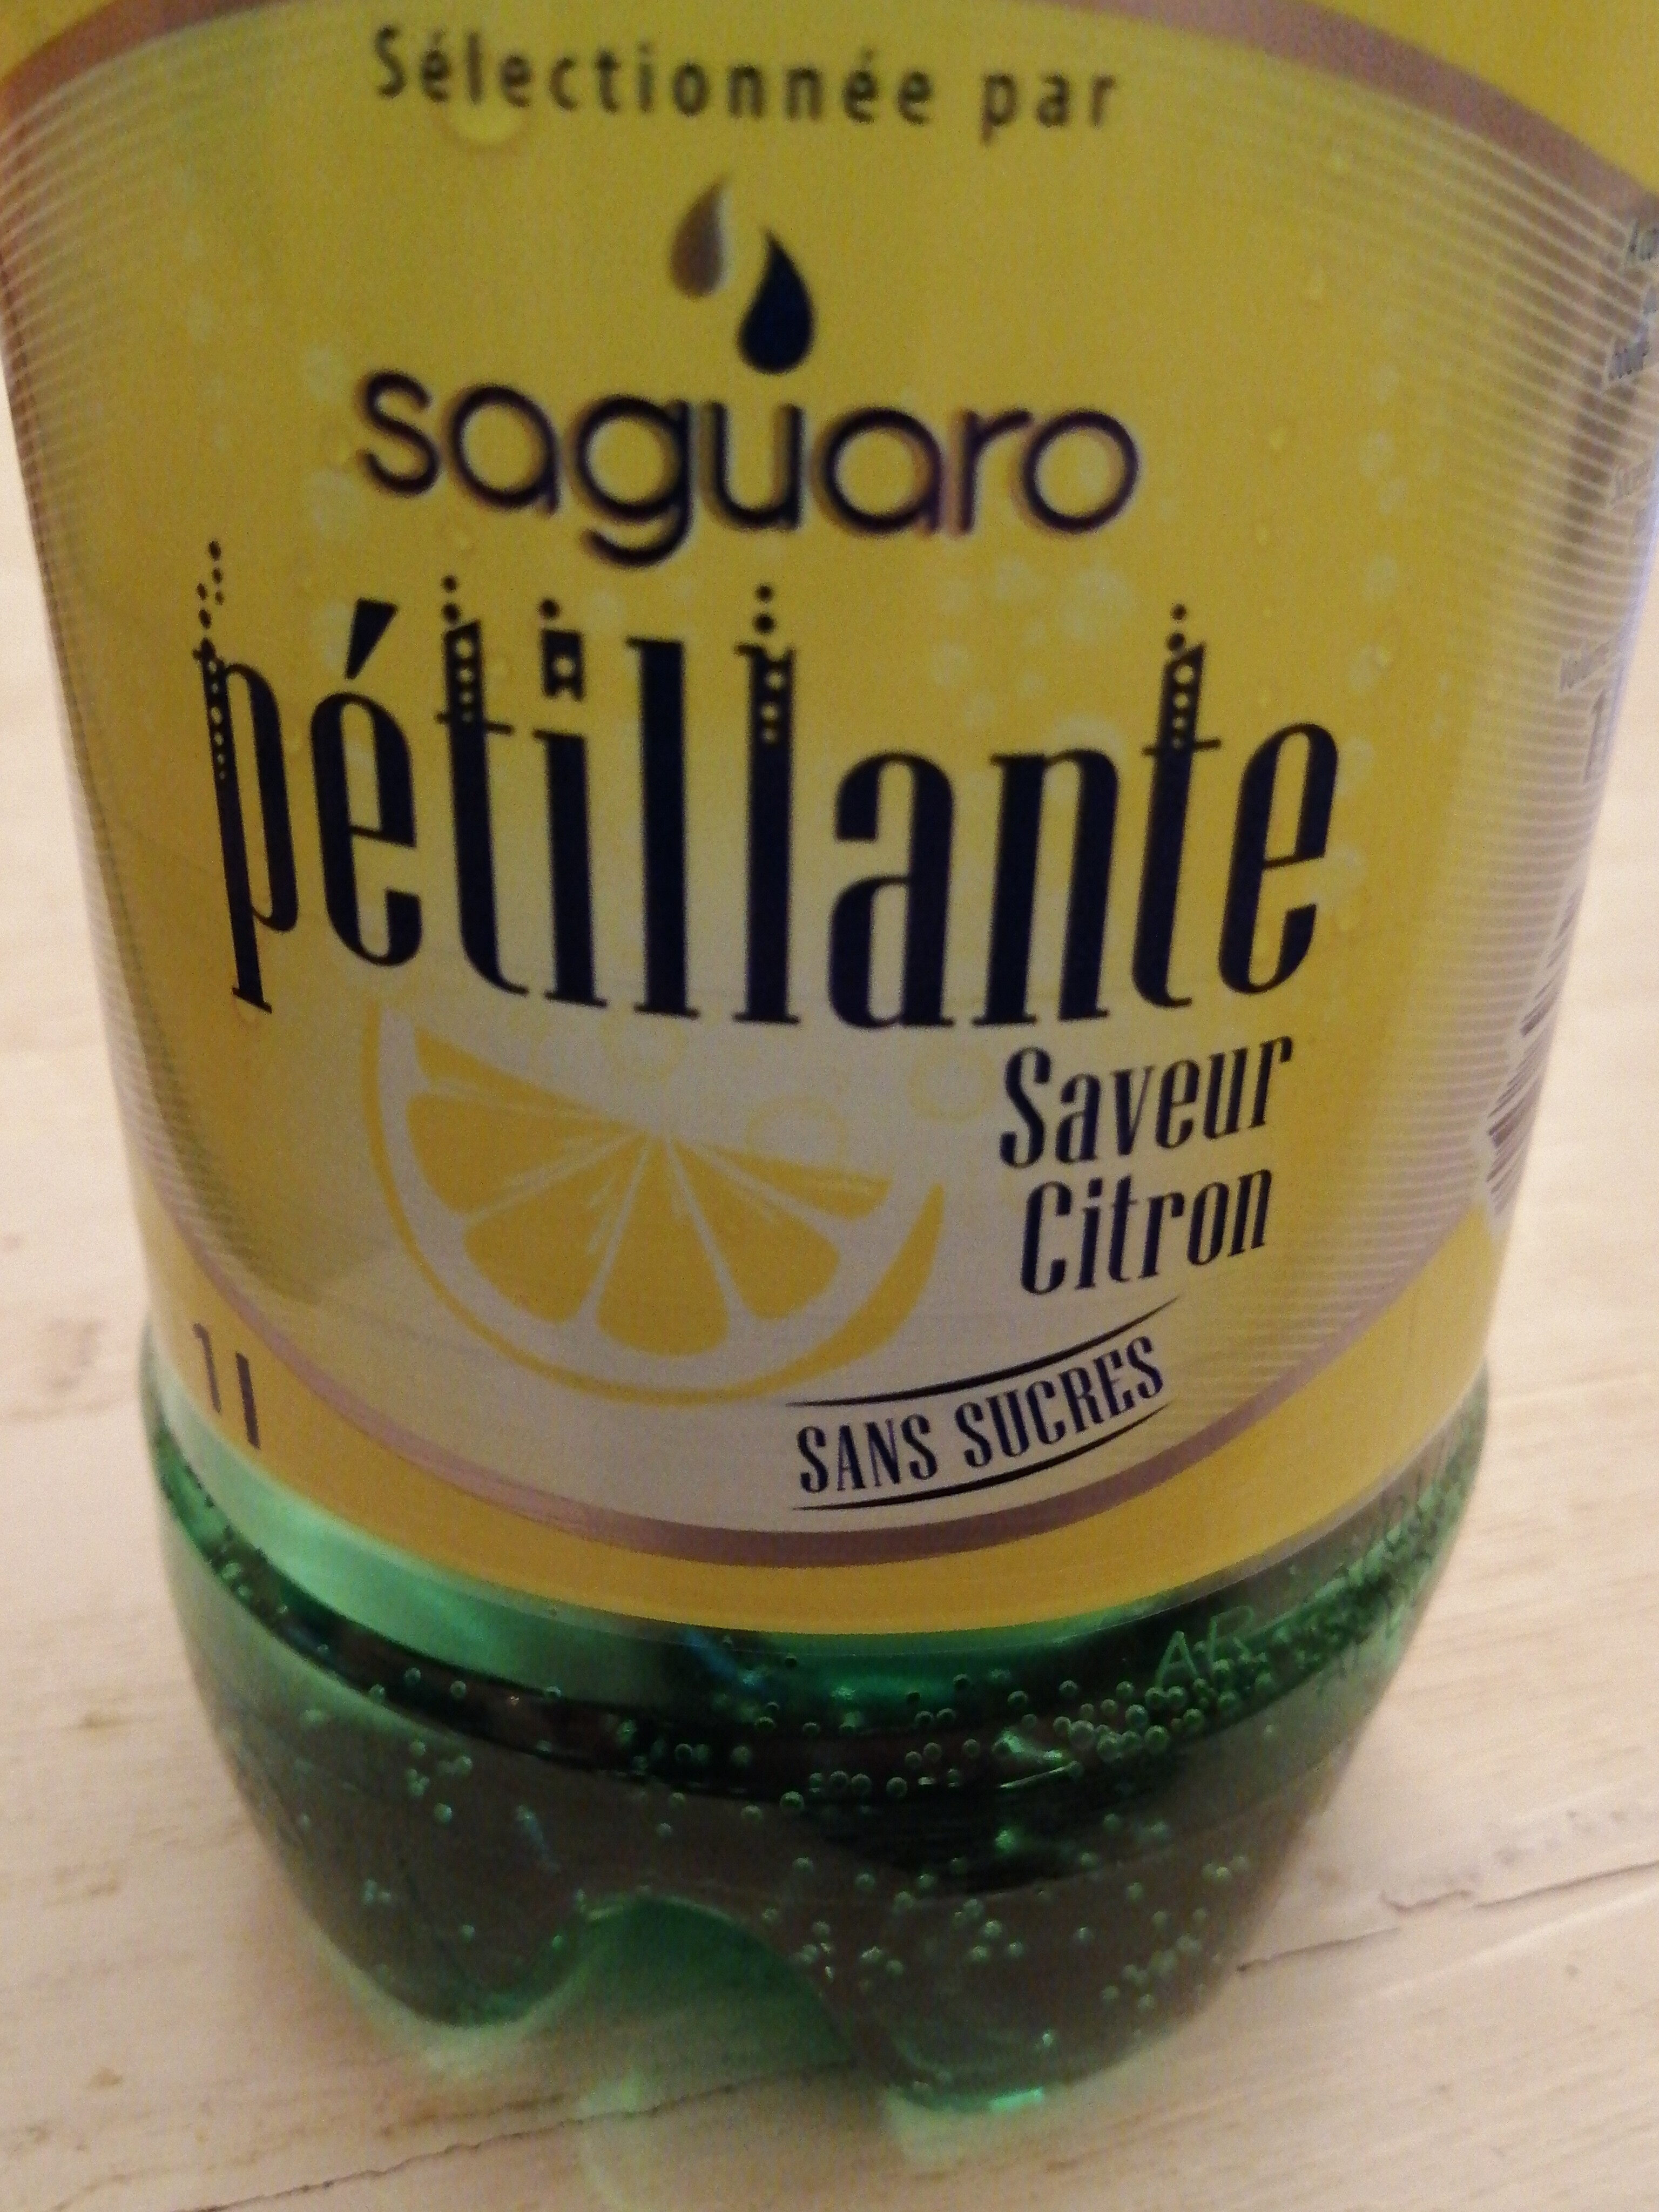 Pétillante Saveur Citron vert - Saguaro - 1 L